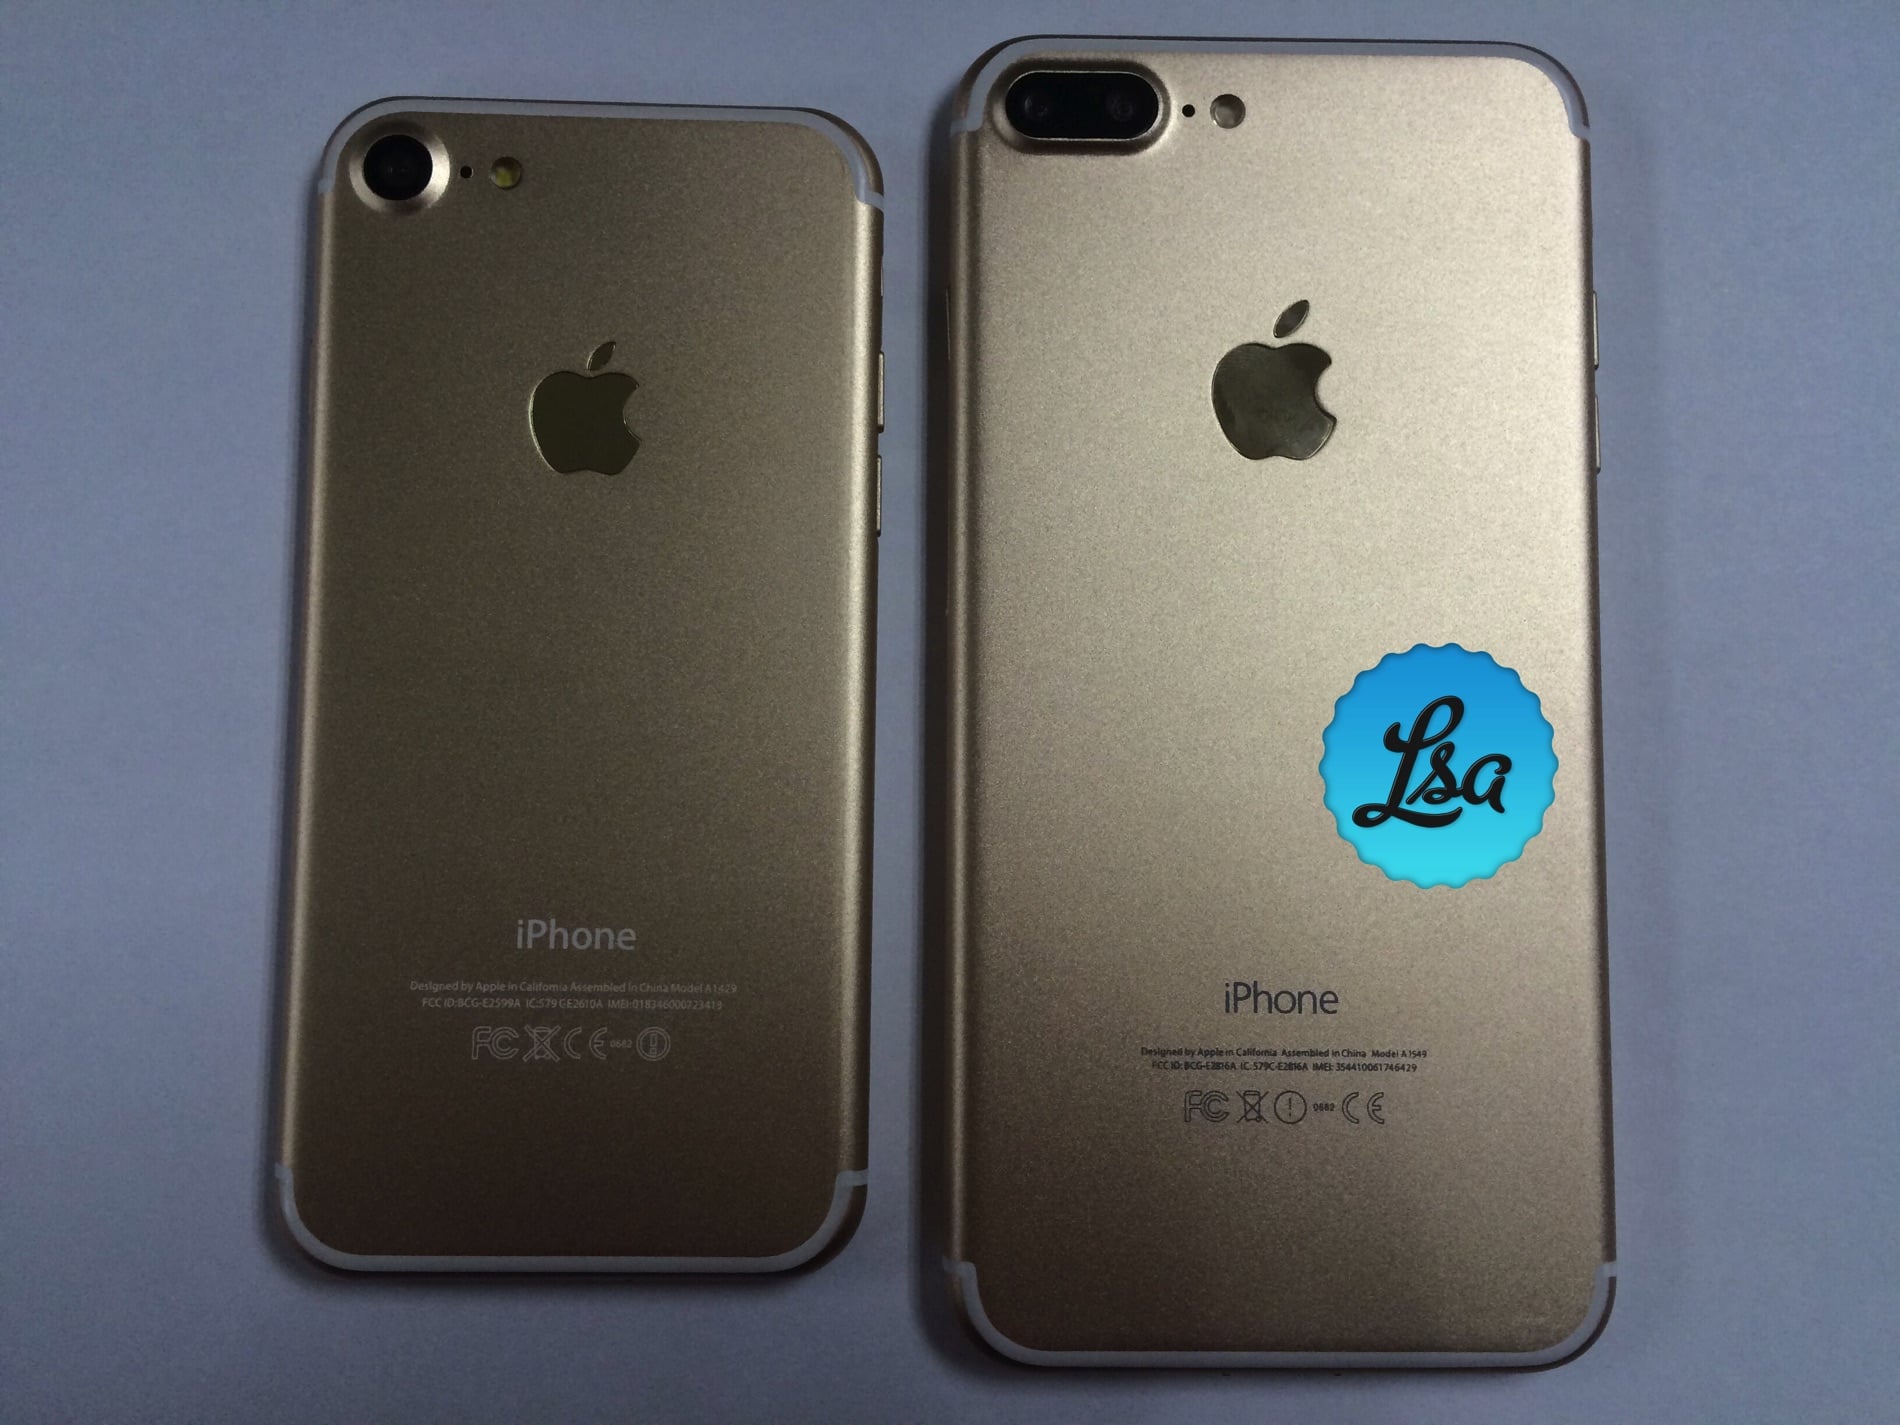 ゴールドカラーの Iphone 7 7plus のモックアップ写真がリーク